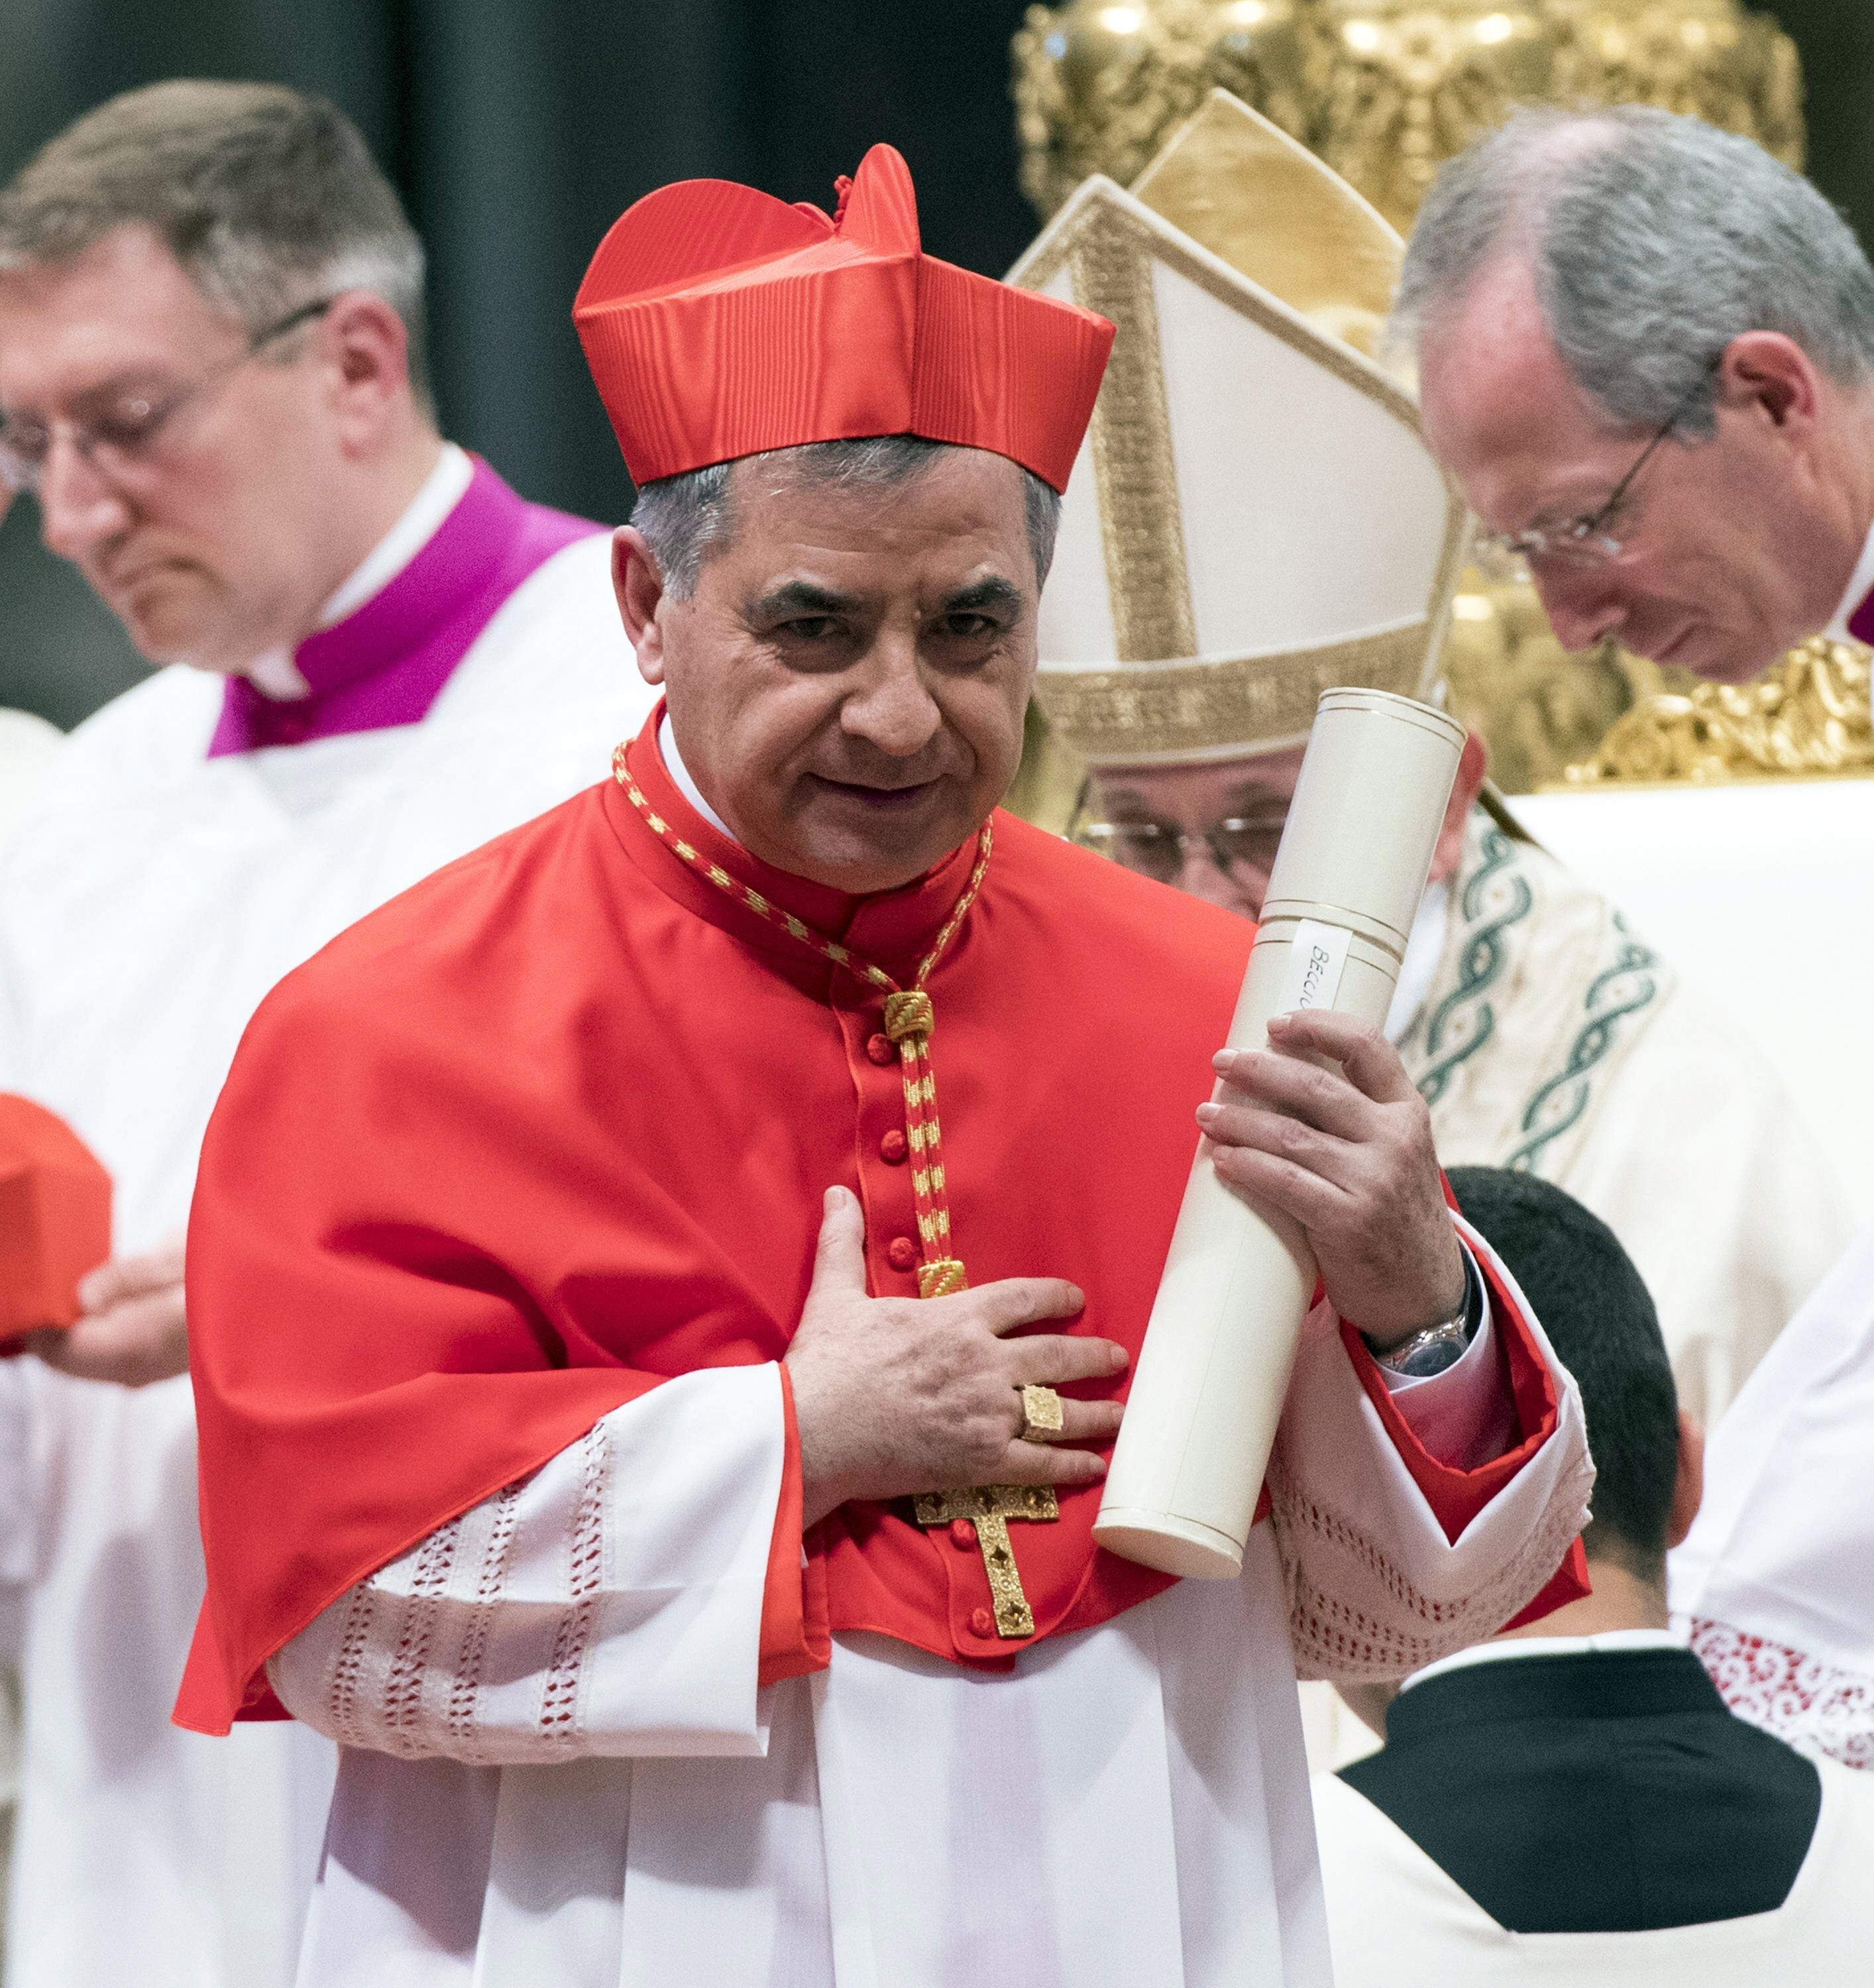 El cardenal Becciu formó parte de la Iglesia Católica entre el 2011 y el 2018, período en el cual se detectaron una serie de irregularidades por las que está siendo investigado (EFE)